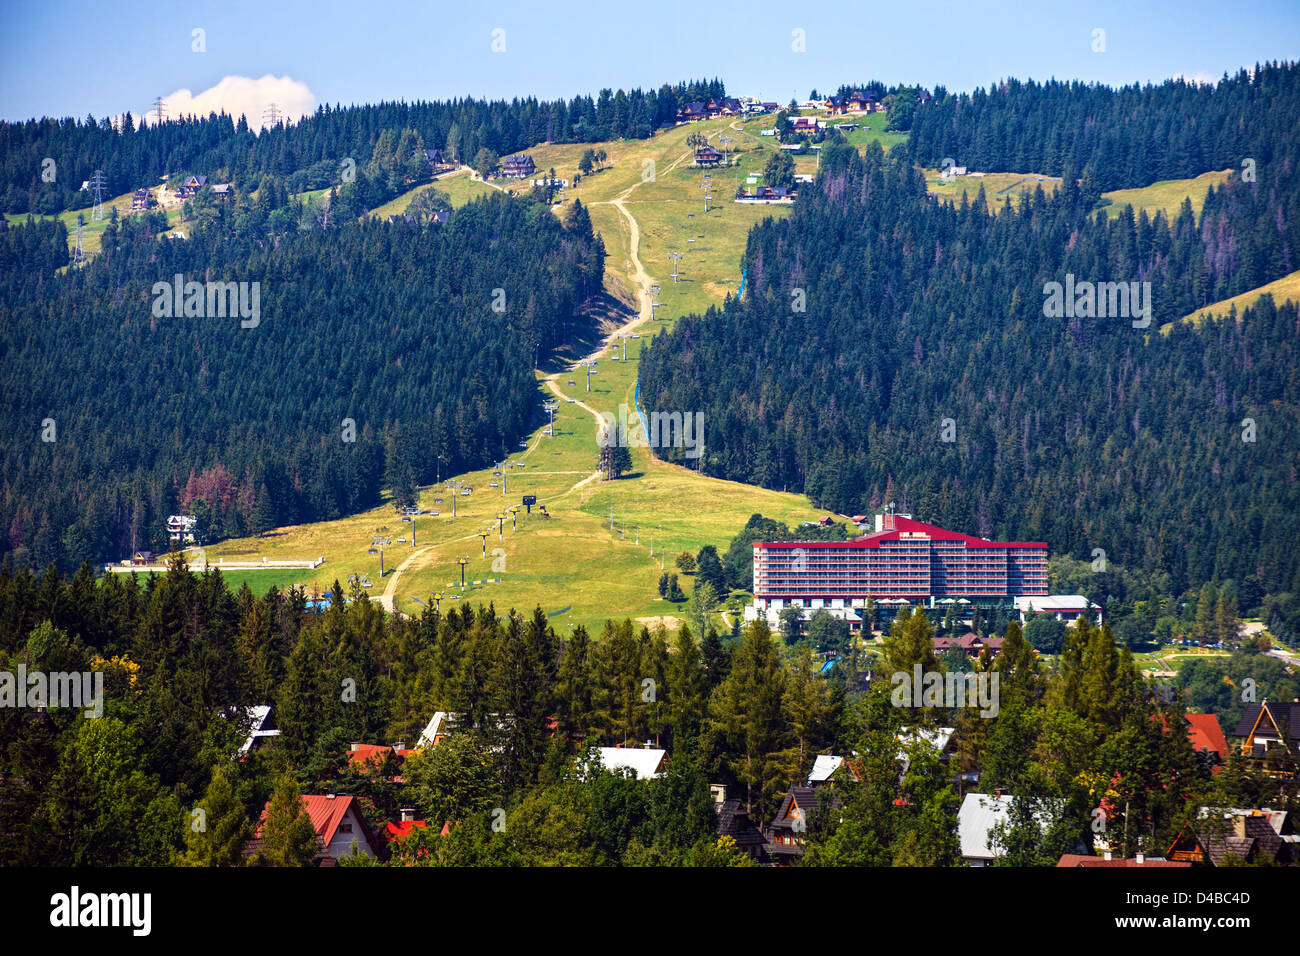 Ski lift in the background near Zakopane, Poland. Stock Photo